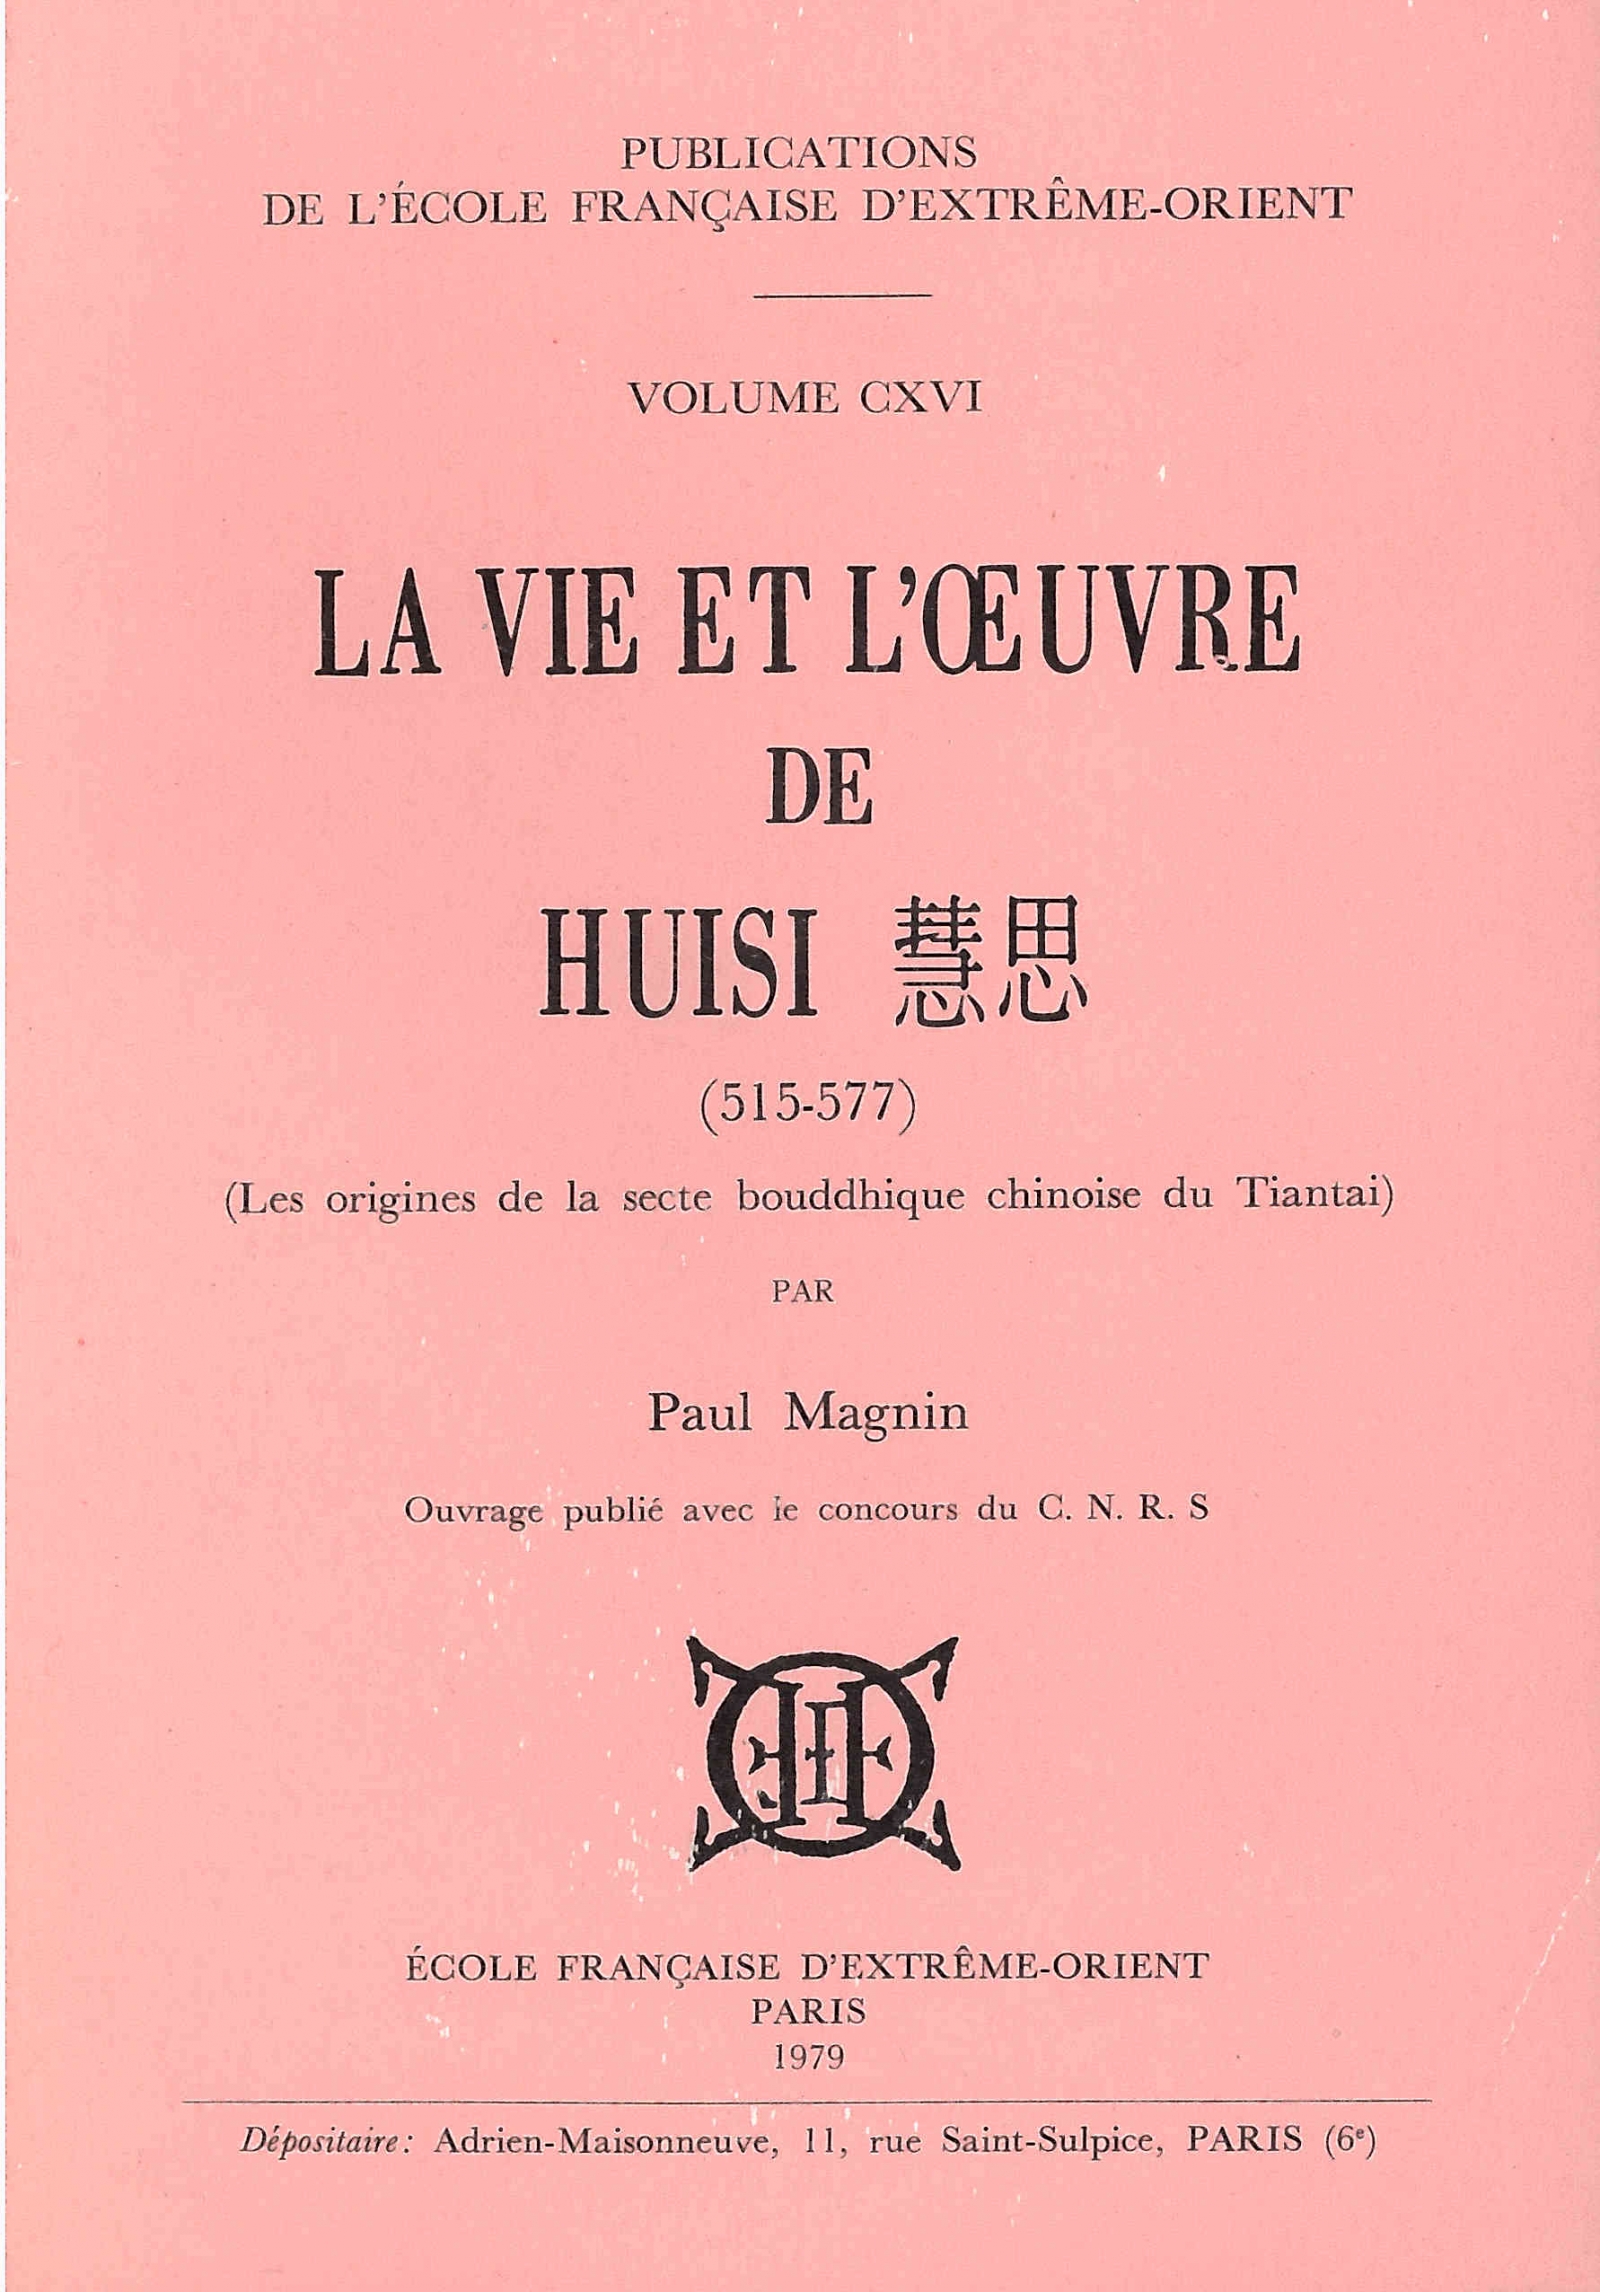 La vie et l'oeuvre de Huisi (515-577)